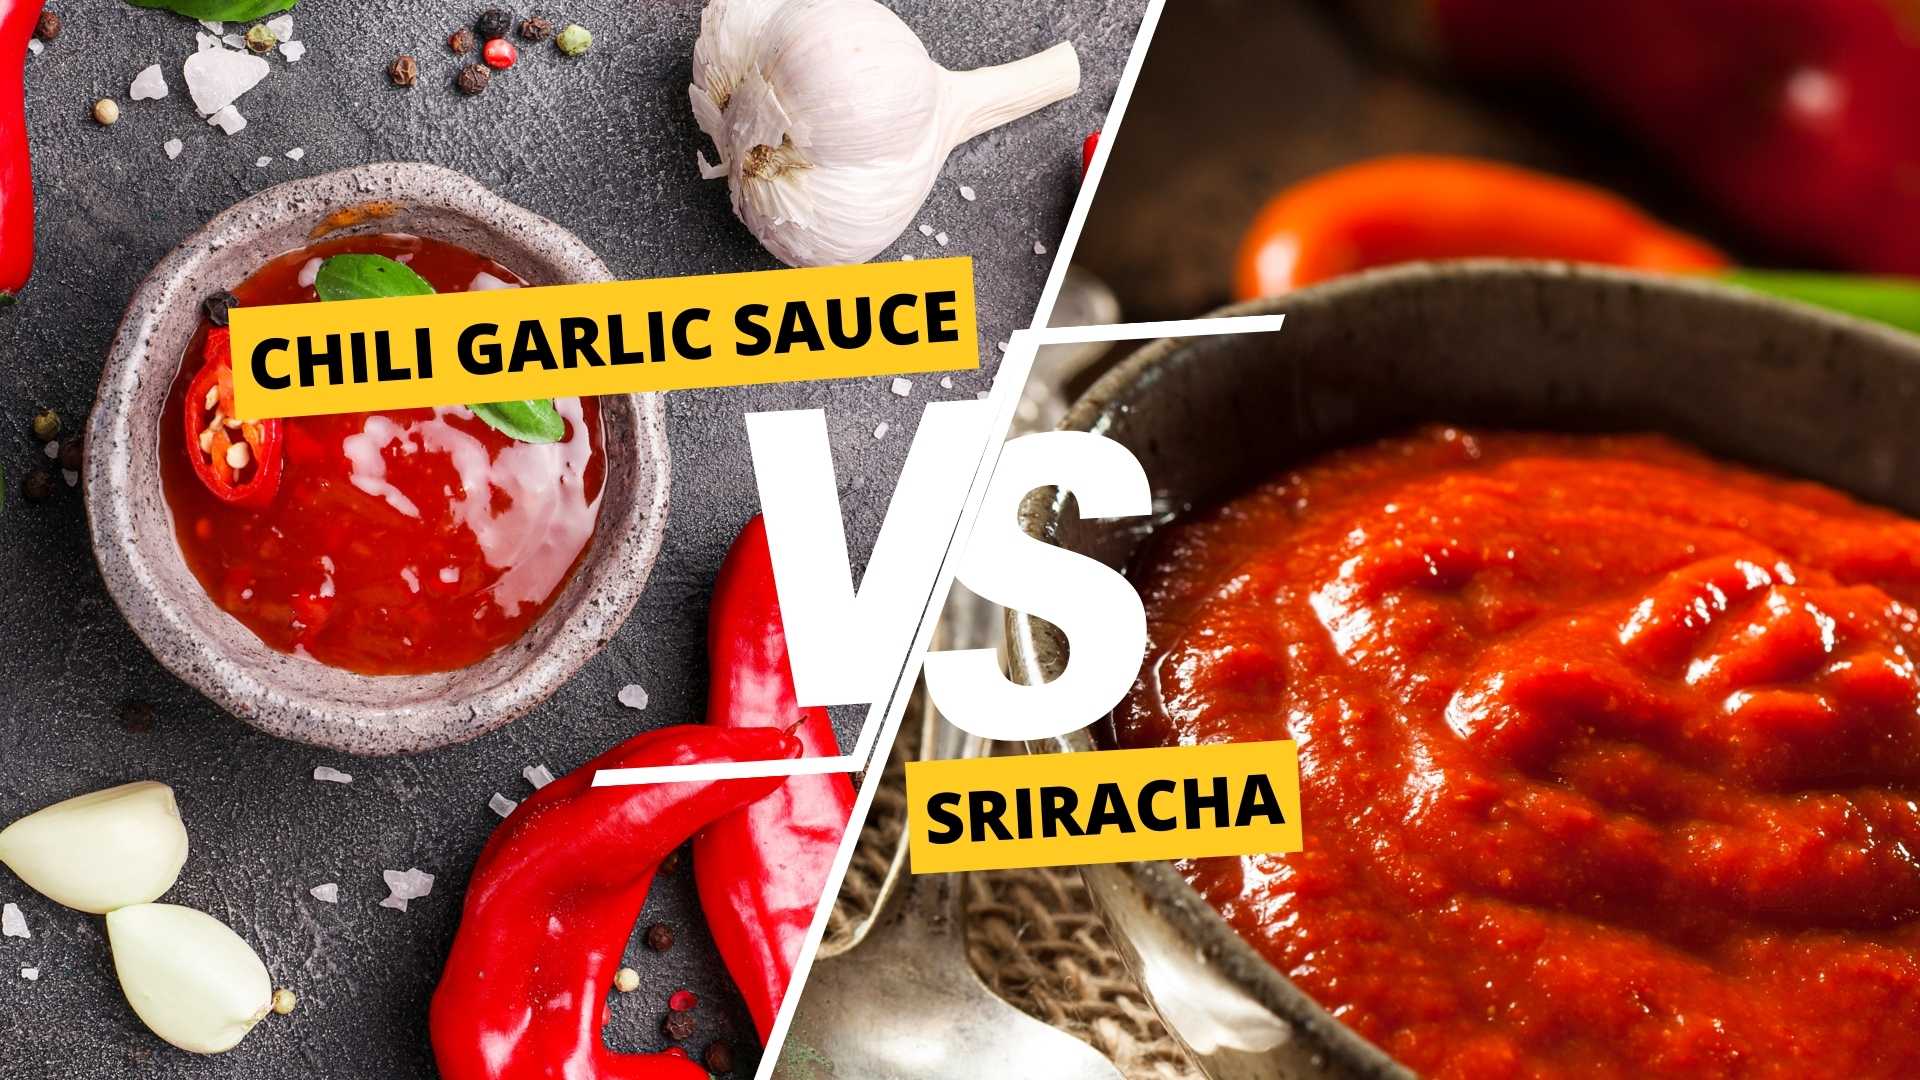 Chili Garlic Sauce vs Sriracha